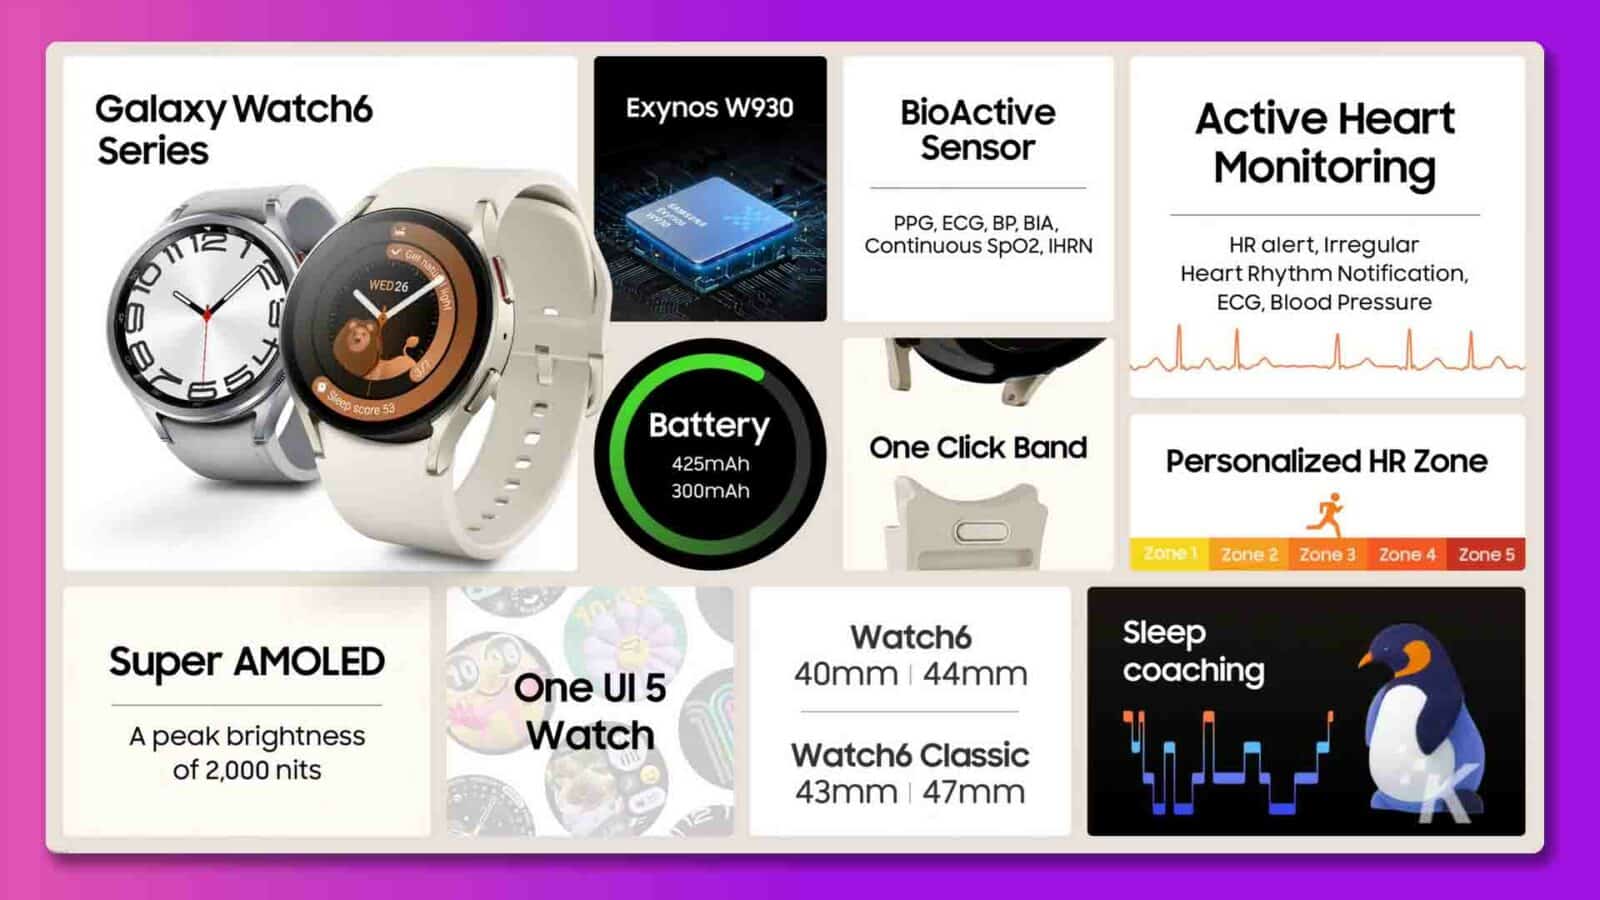 Această imagine arată caracteristicile Samsung Galaxy Watch6, inclusiv senzorii, durata de viață a bateriei, afișajul și capabilitățile de urmărire a somnului. Text complet: Galaxy Watch6 Exynos W930 BioActive Monitorizare senzori active pentru inimă SAMSUNG PPG, ECG, BP, BIA, SpO2 continuă, alertă IHRN HR, natură neregulată 0 Notificare ritm cardiac, ECG luminos WED26, tensiune arterială 1 Scor pas 53 Baterie Bandă cu un clic 425mAh Zona HR personalizată 300mAh Zona 1 Zona 2 Zona 3 Zona 4 Zona 5 Ceas Super AMOLED6 Sleep One UI 5 40mm | Antrenament de 44 mm Un ceas cu luminozitate maximă de 2.000 de nit Watch6 Classic 43 mm | 47 mm